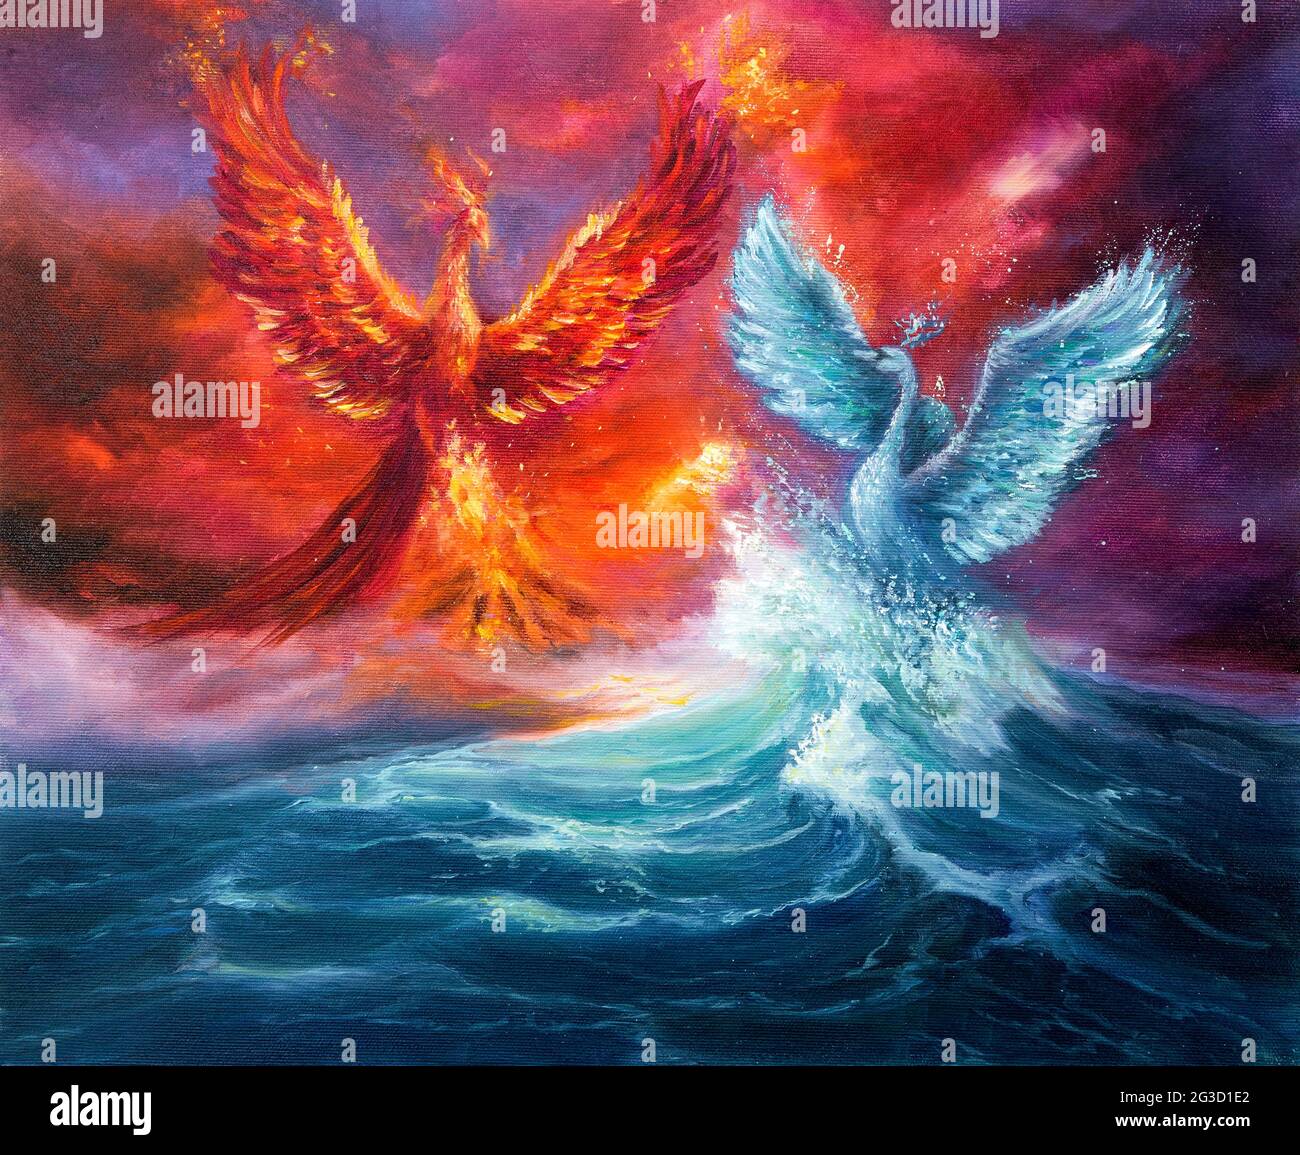 Peinture à l'huile abstraite originale montrant la mythologie phoenix et le cygne spirituel des vagues dans l'océan ou la mer sur toile.Golden coucher de soleil. Impressionnisme moderne, Banque D'Images